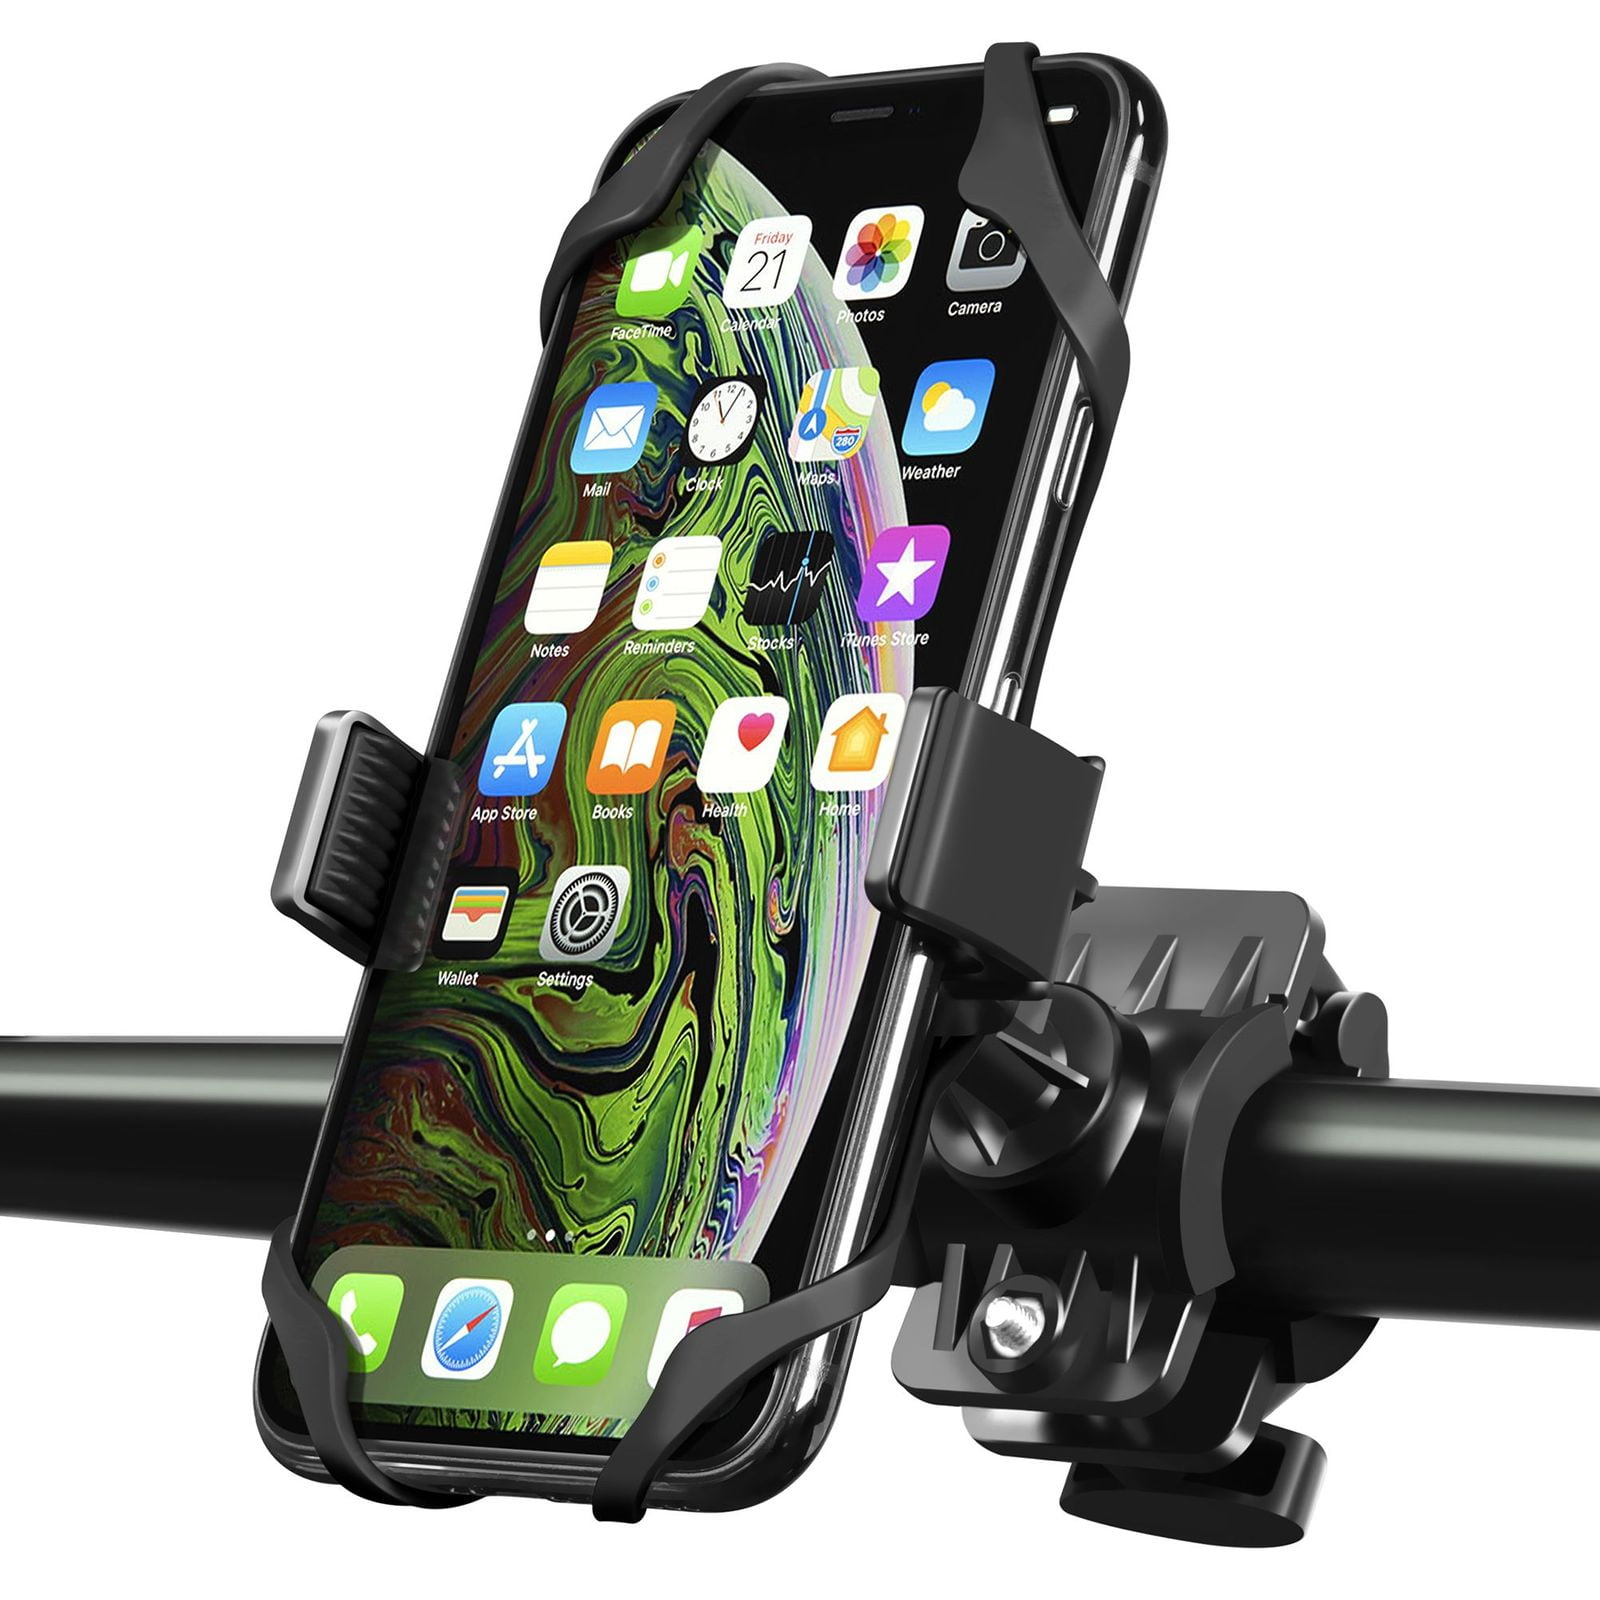 Bracelet en caoutchouc Rose Rotation /à 360/° avec Smartphone Wrcibo Support bicyclette Berceau Universel t/él/éphone Support V/élo du Guidon iPhone GPS et autres appareils